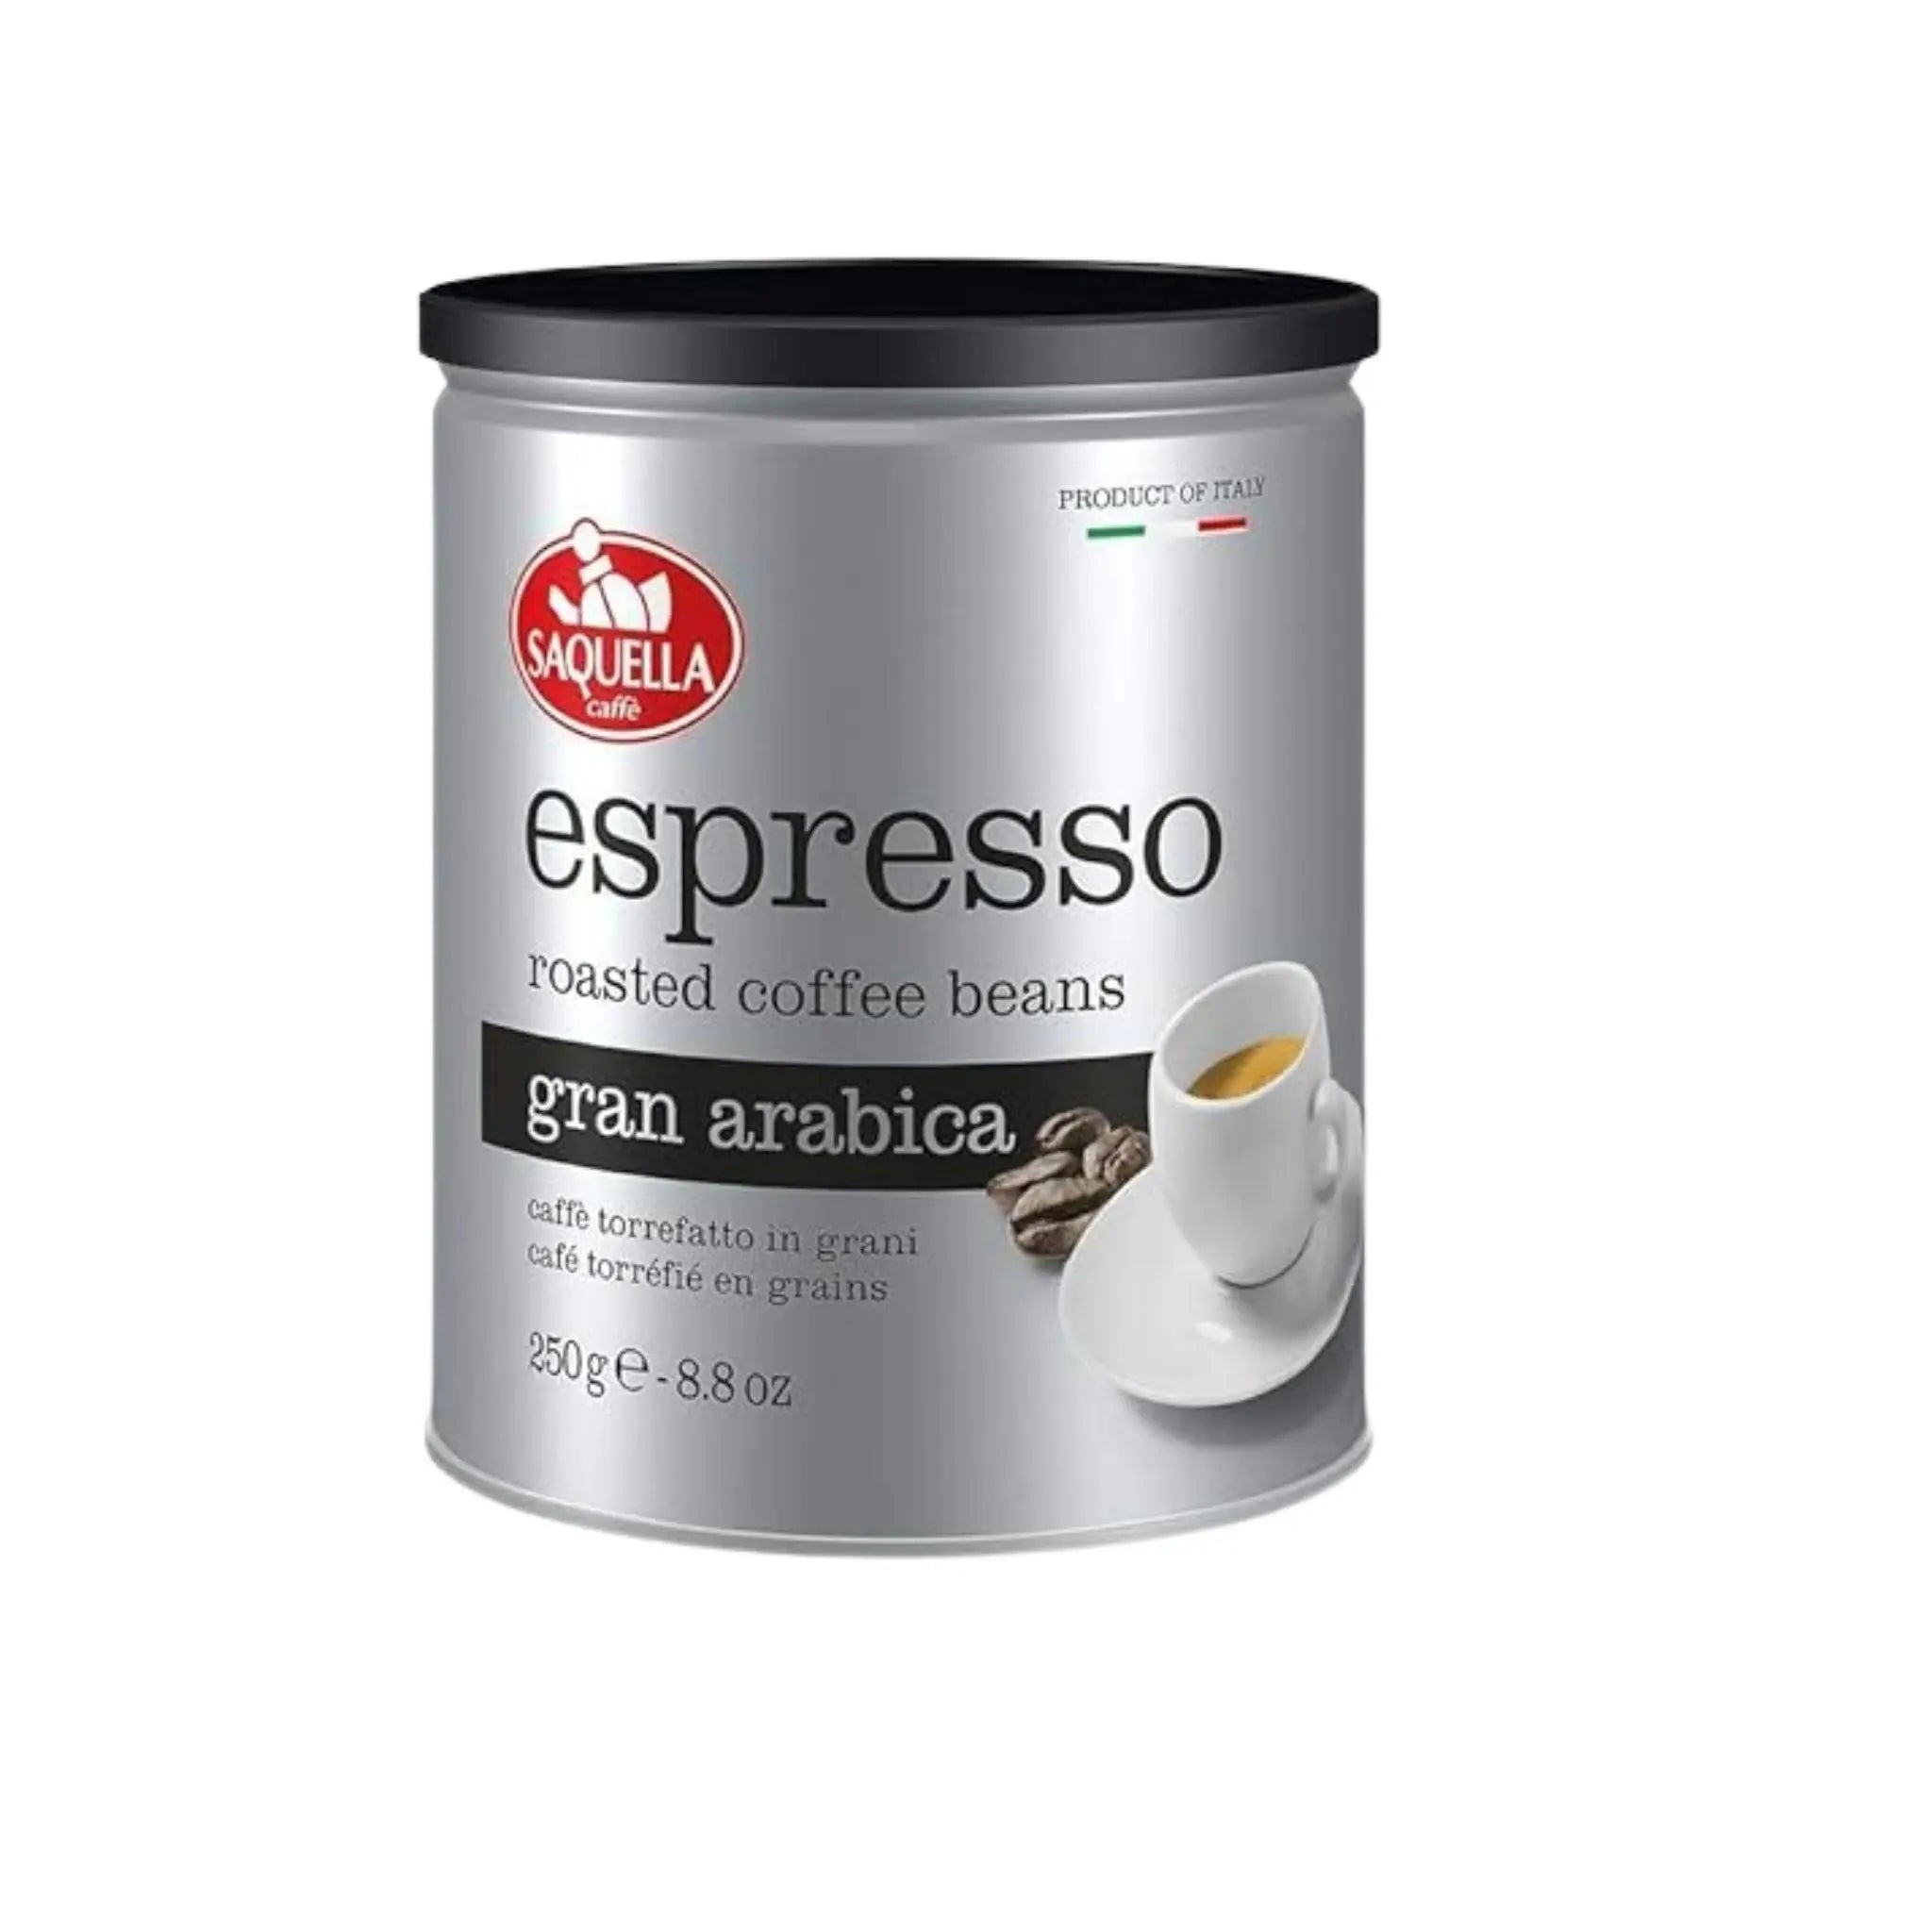 Saquella Espresso Gran Arabica - 6x250g (1 carton) - Marino.AE